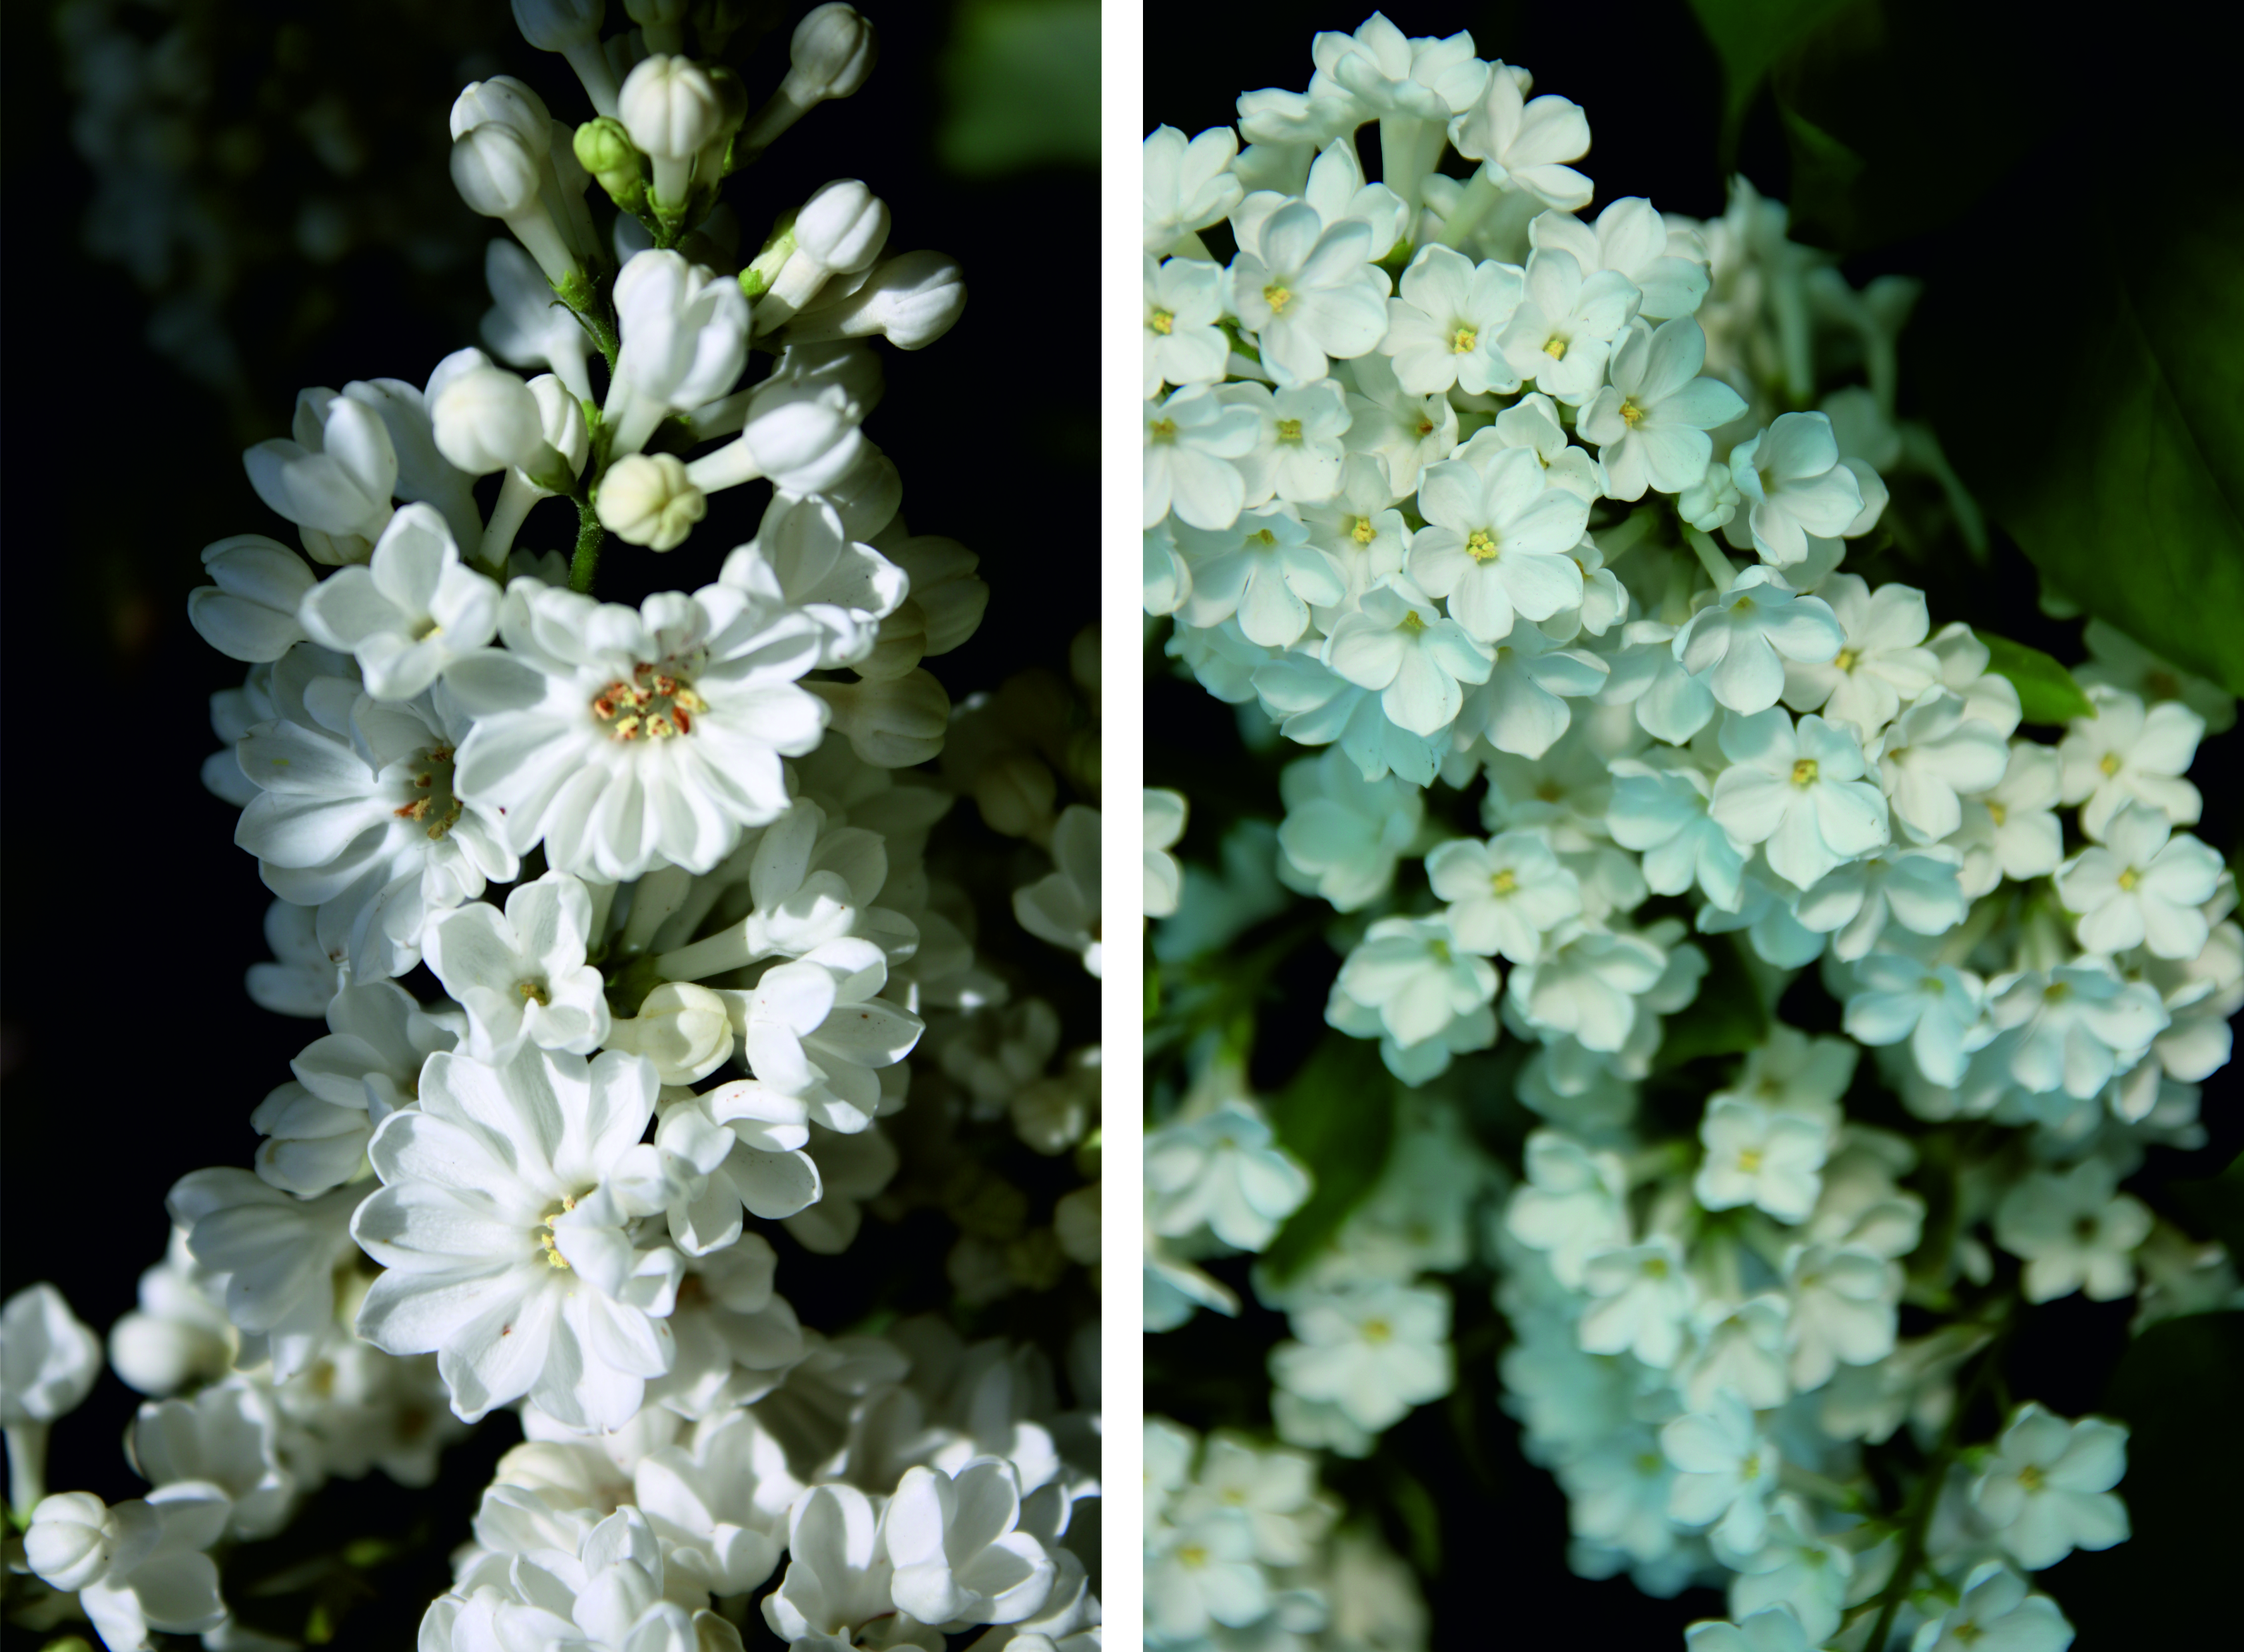 Syringa vulgaris "Rochester Blüten